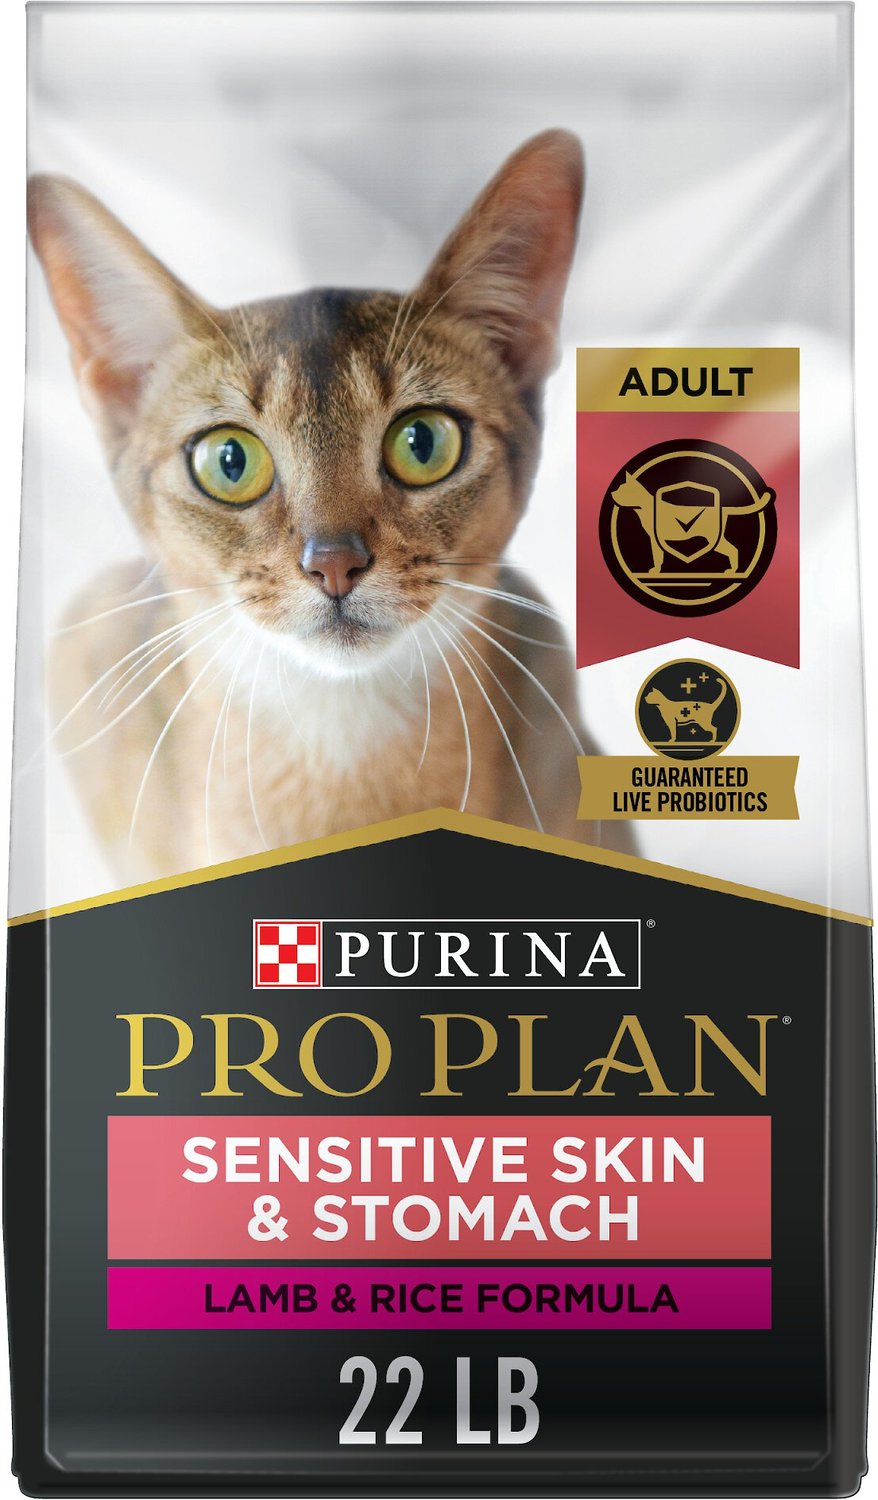 Purina Pro Plan Focus Adult Sensitive Skin & Stomach Lamb & Rice